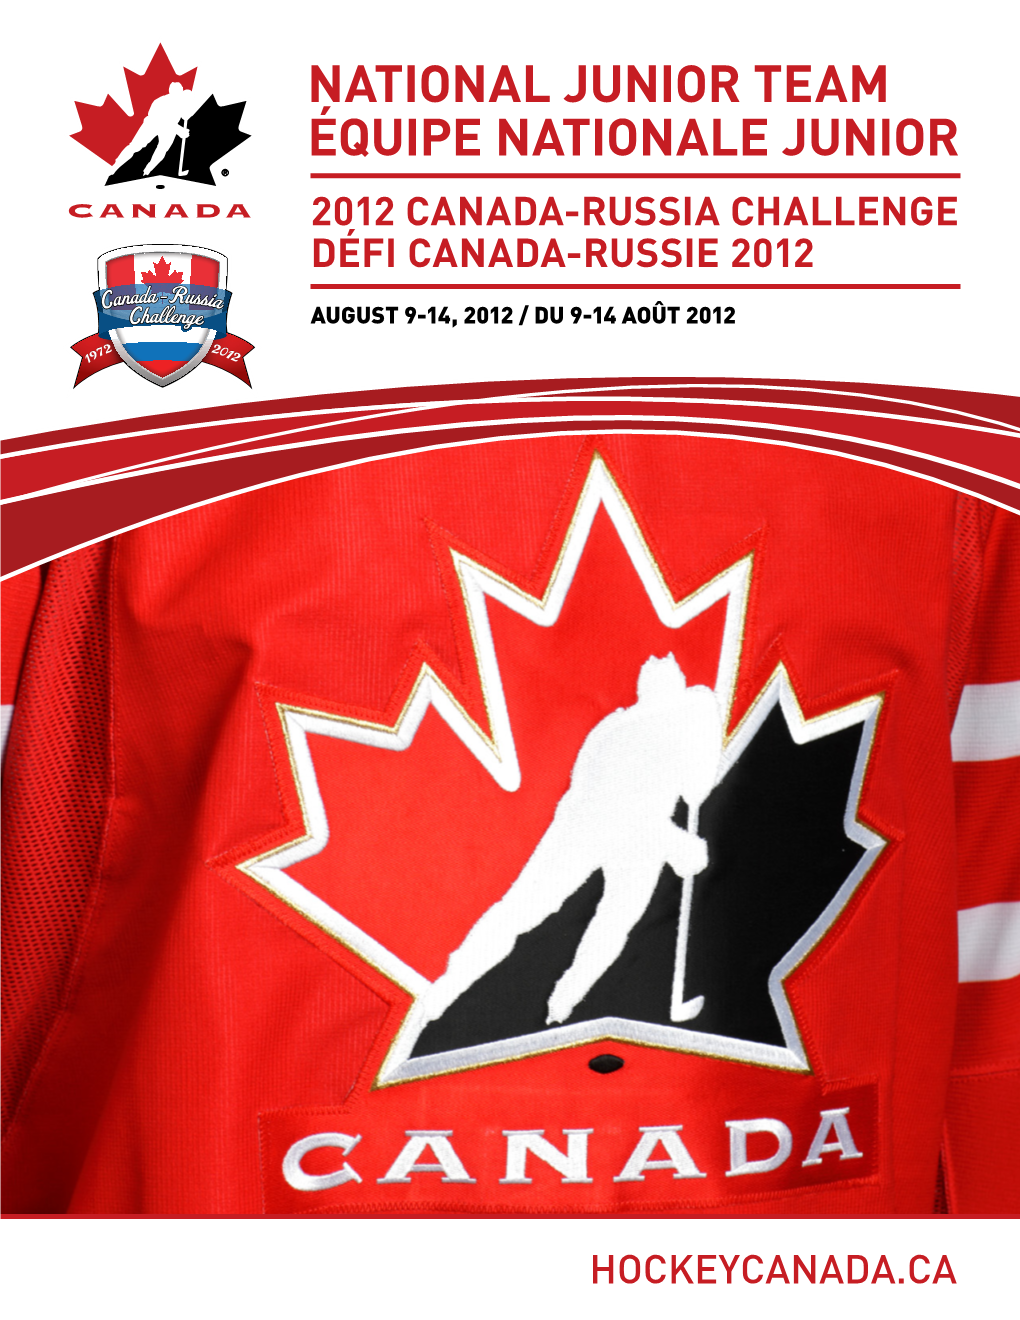 NATIONAL JUNIOR TEAM ÉQUIPE NATIONALE JUNIOR 2012 Canada-Russia Challenge Défi Canada-Russie 2012